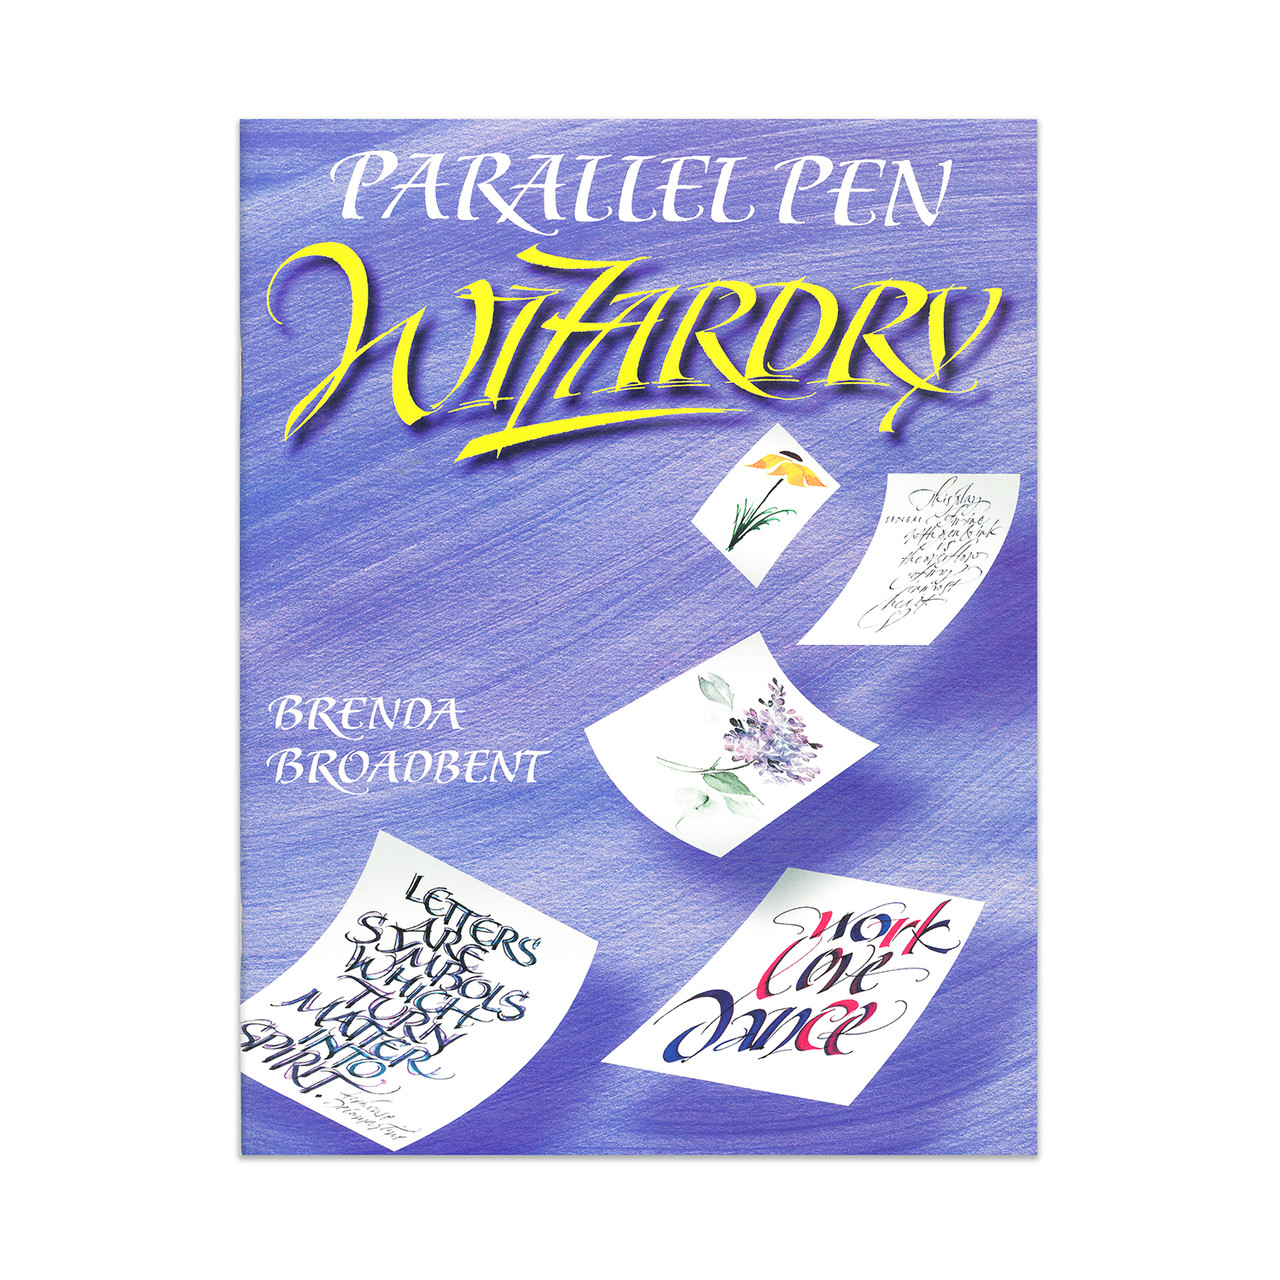 Parallel Pen Wizardry Book by Brenda Broadbent